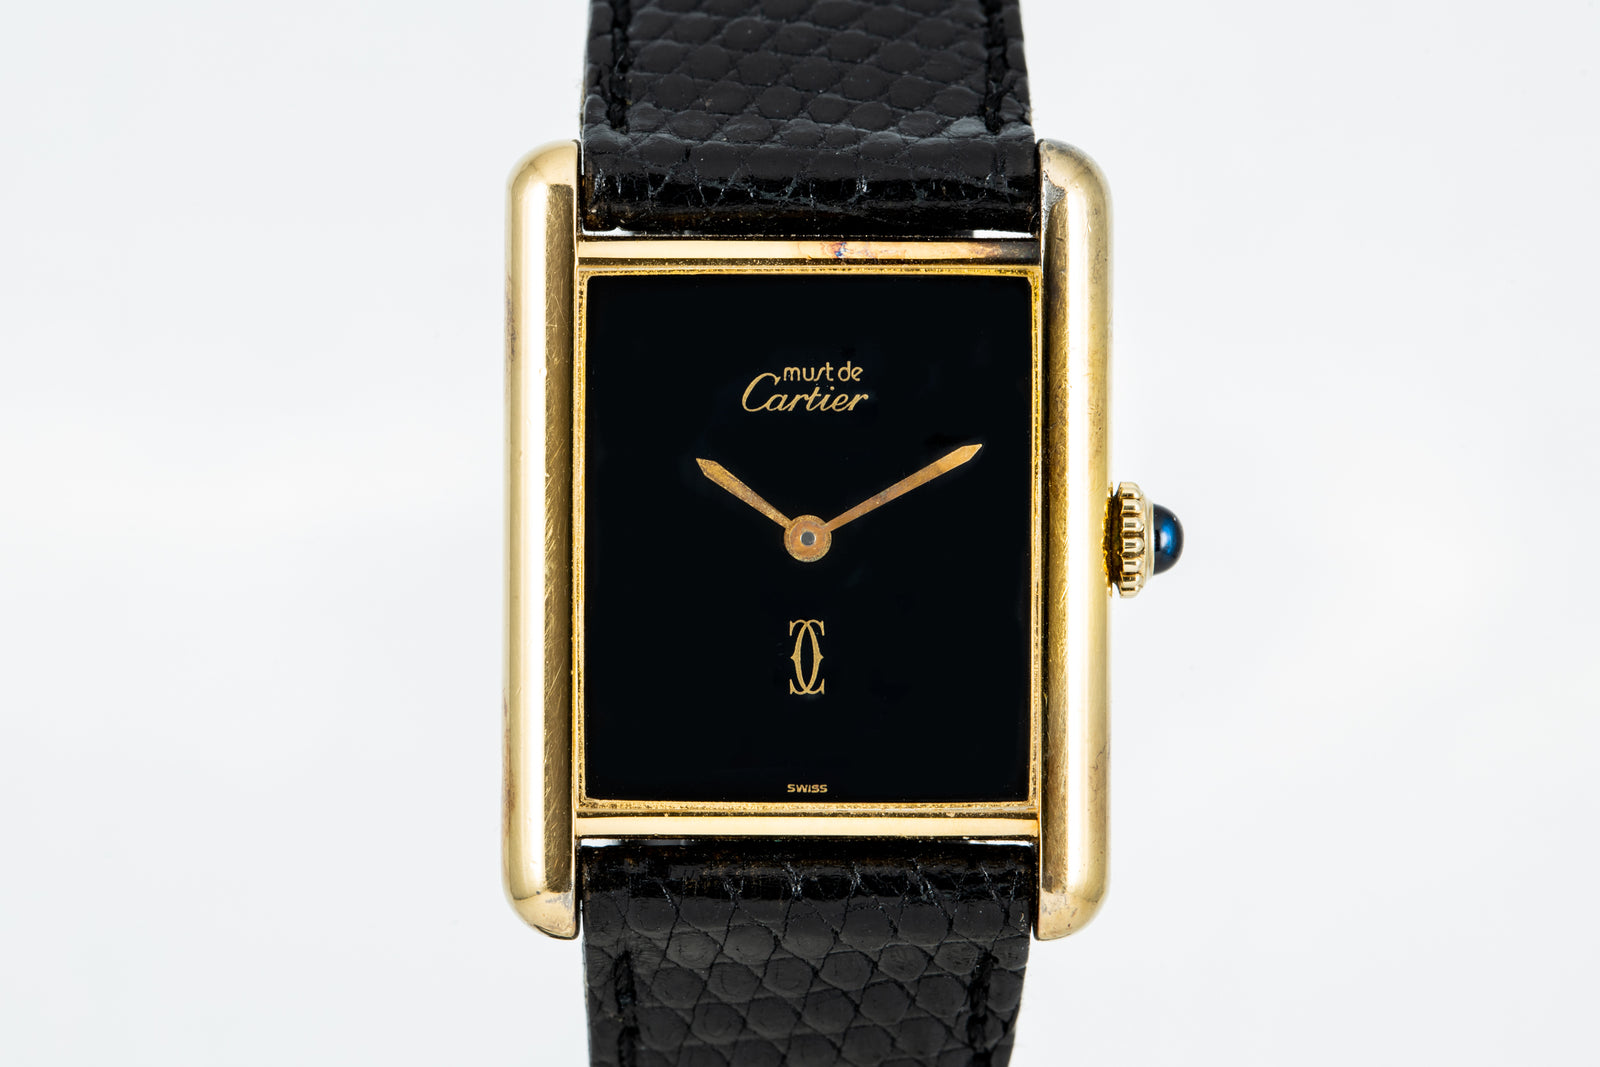 Cartier 'Must De Cartier' Tank Louis